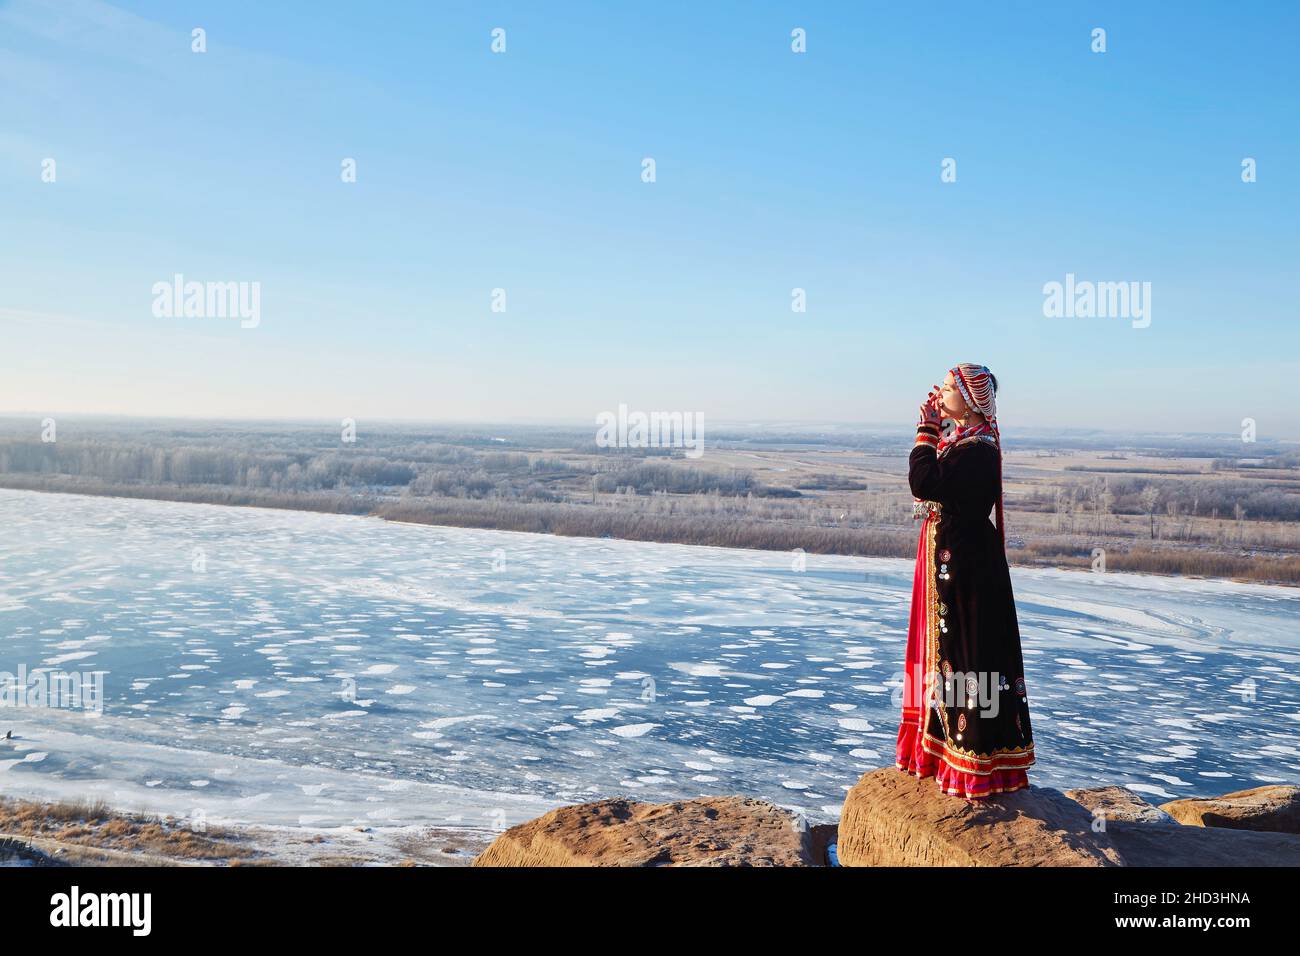 Seitenansicht der Frau in authentischem Kostüm spielt ein Musikinstrument maultrommel mit dem gefrorenen Fluss auf dem Hintergrund, während sie auf Steinen ne steht Stockfoto